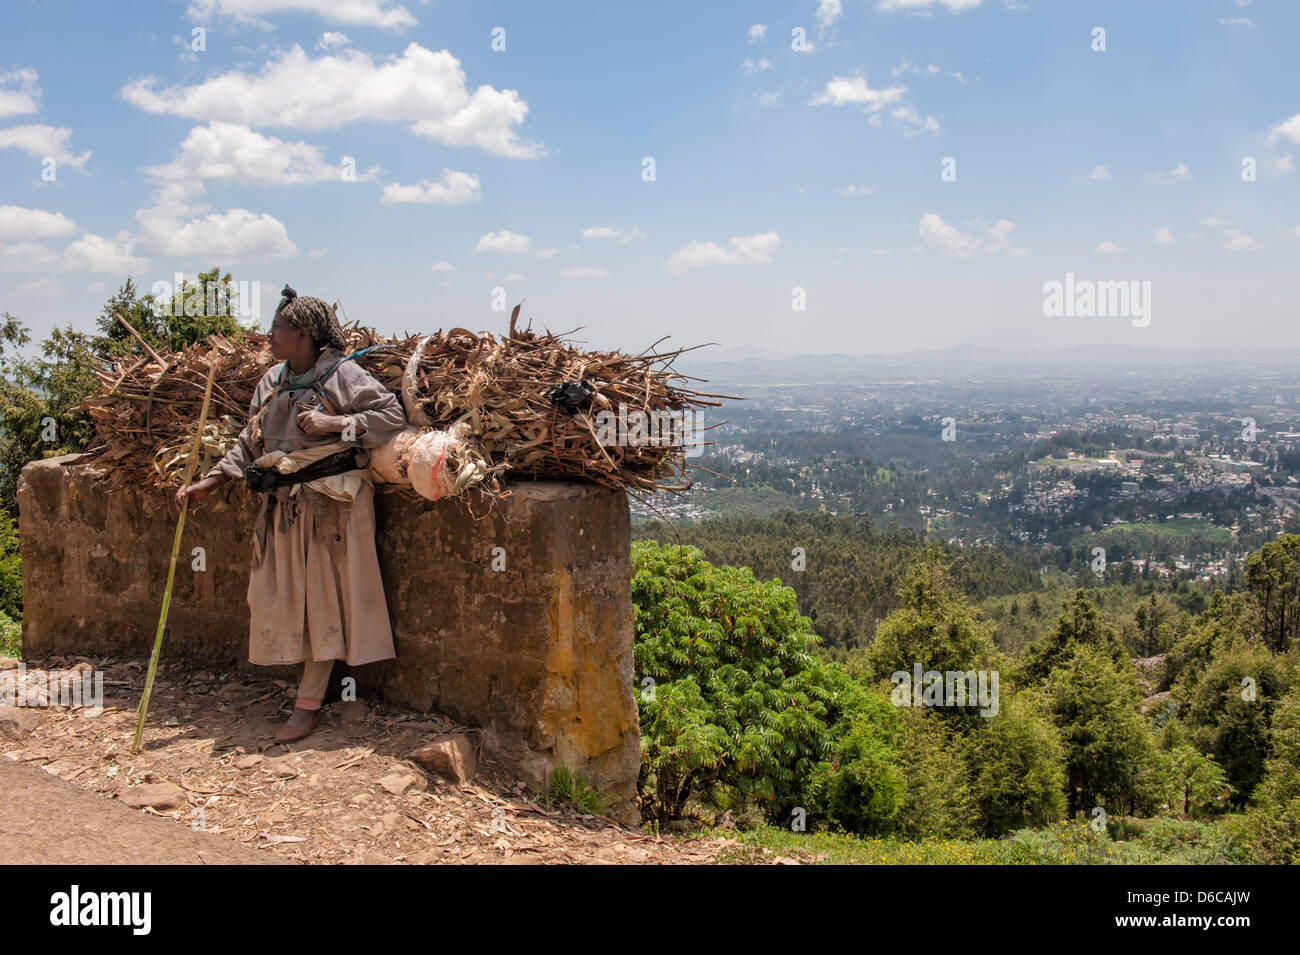 Woman carrying a bundle of eucalyptus wood, Addis Ababa, Ethiopia Stock Photo